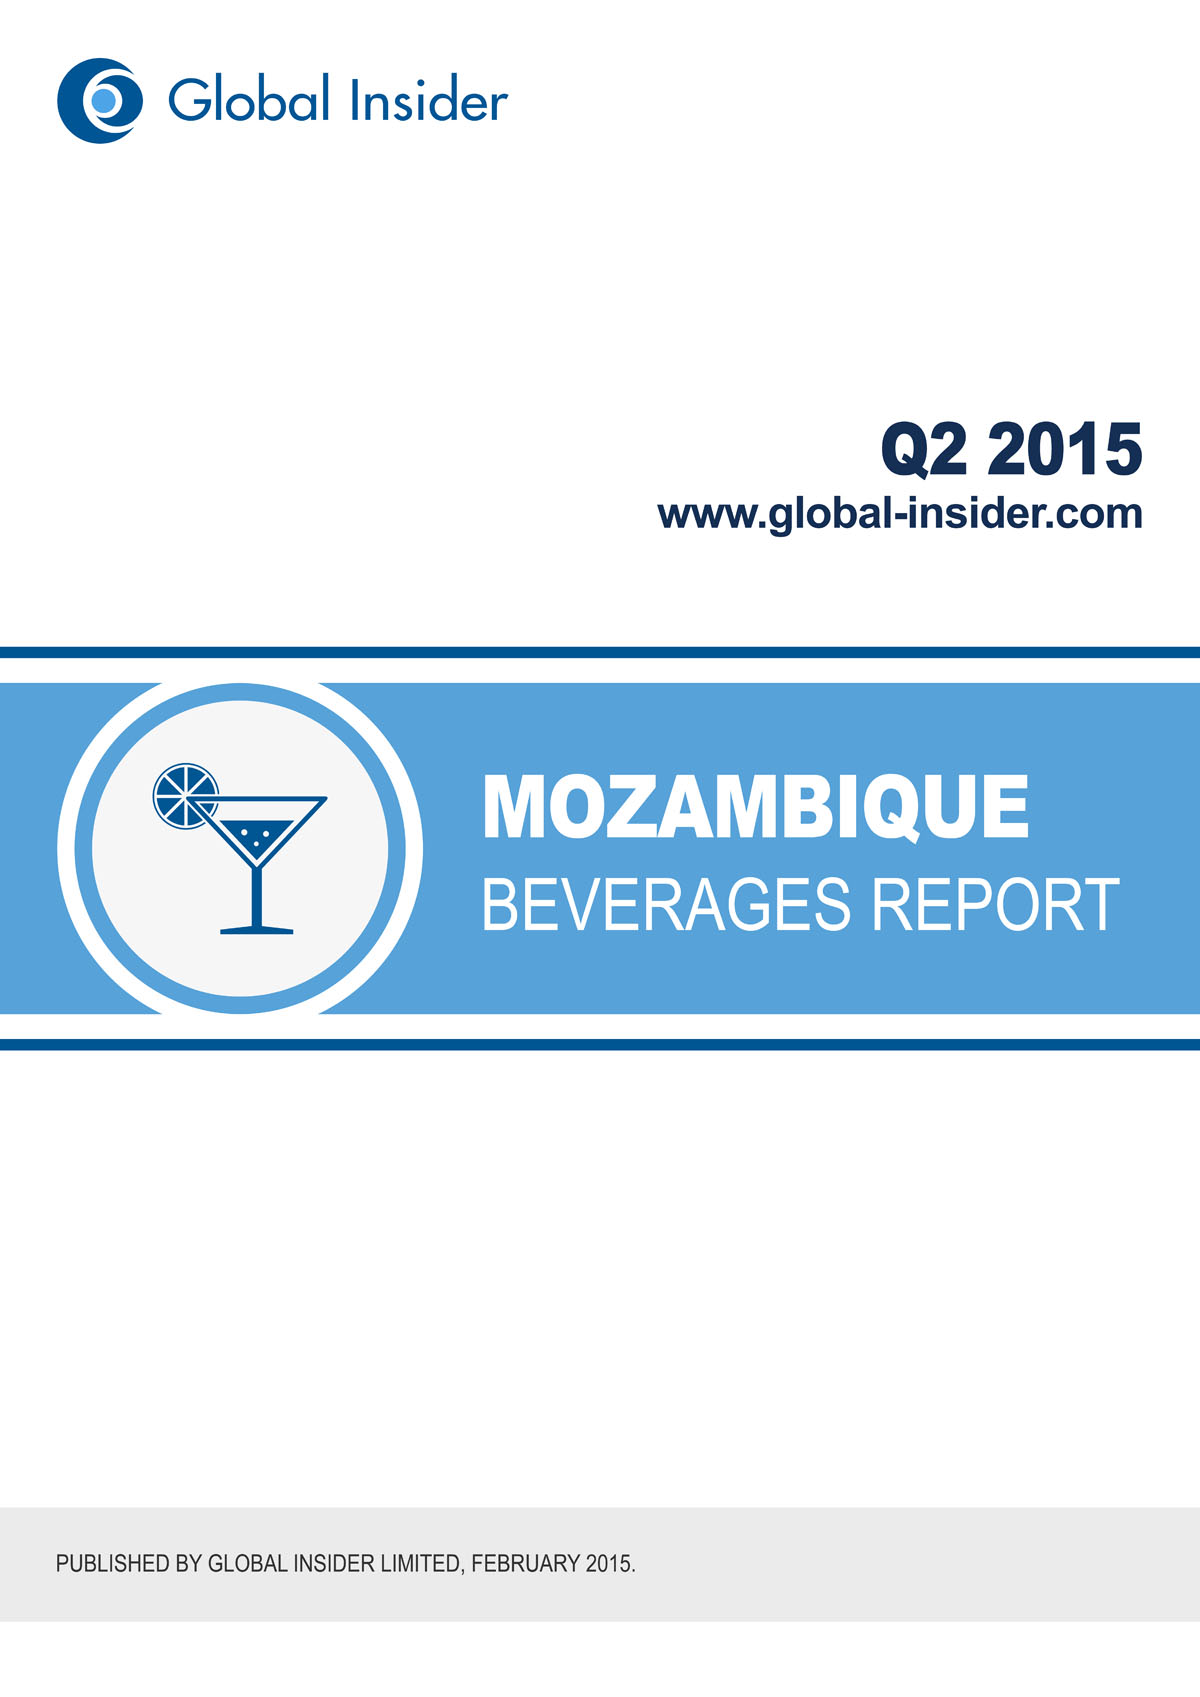 Mozambique Beverages Report